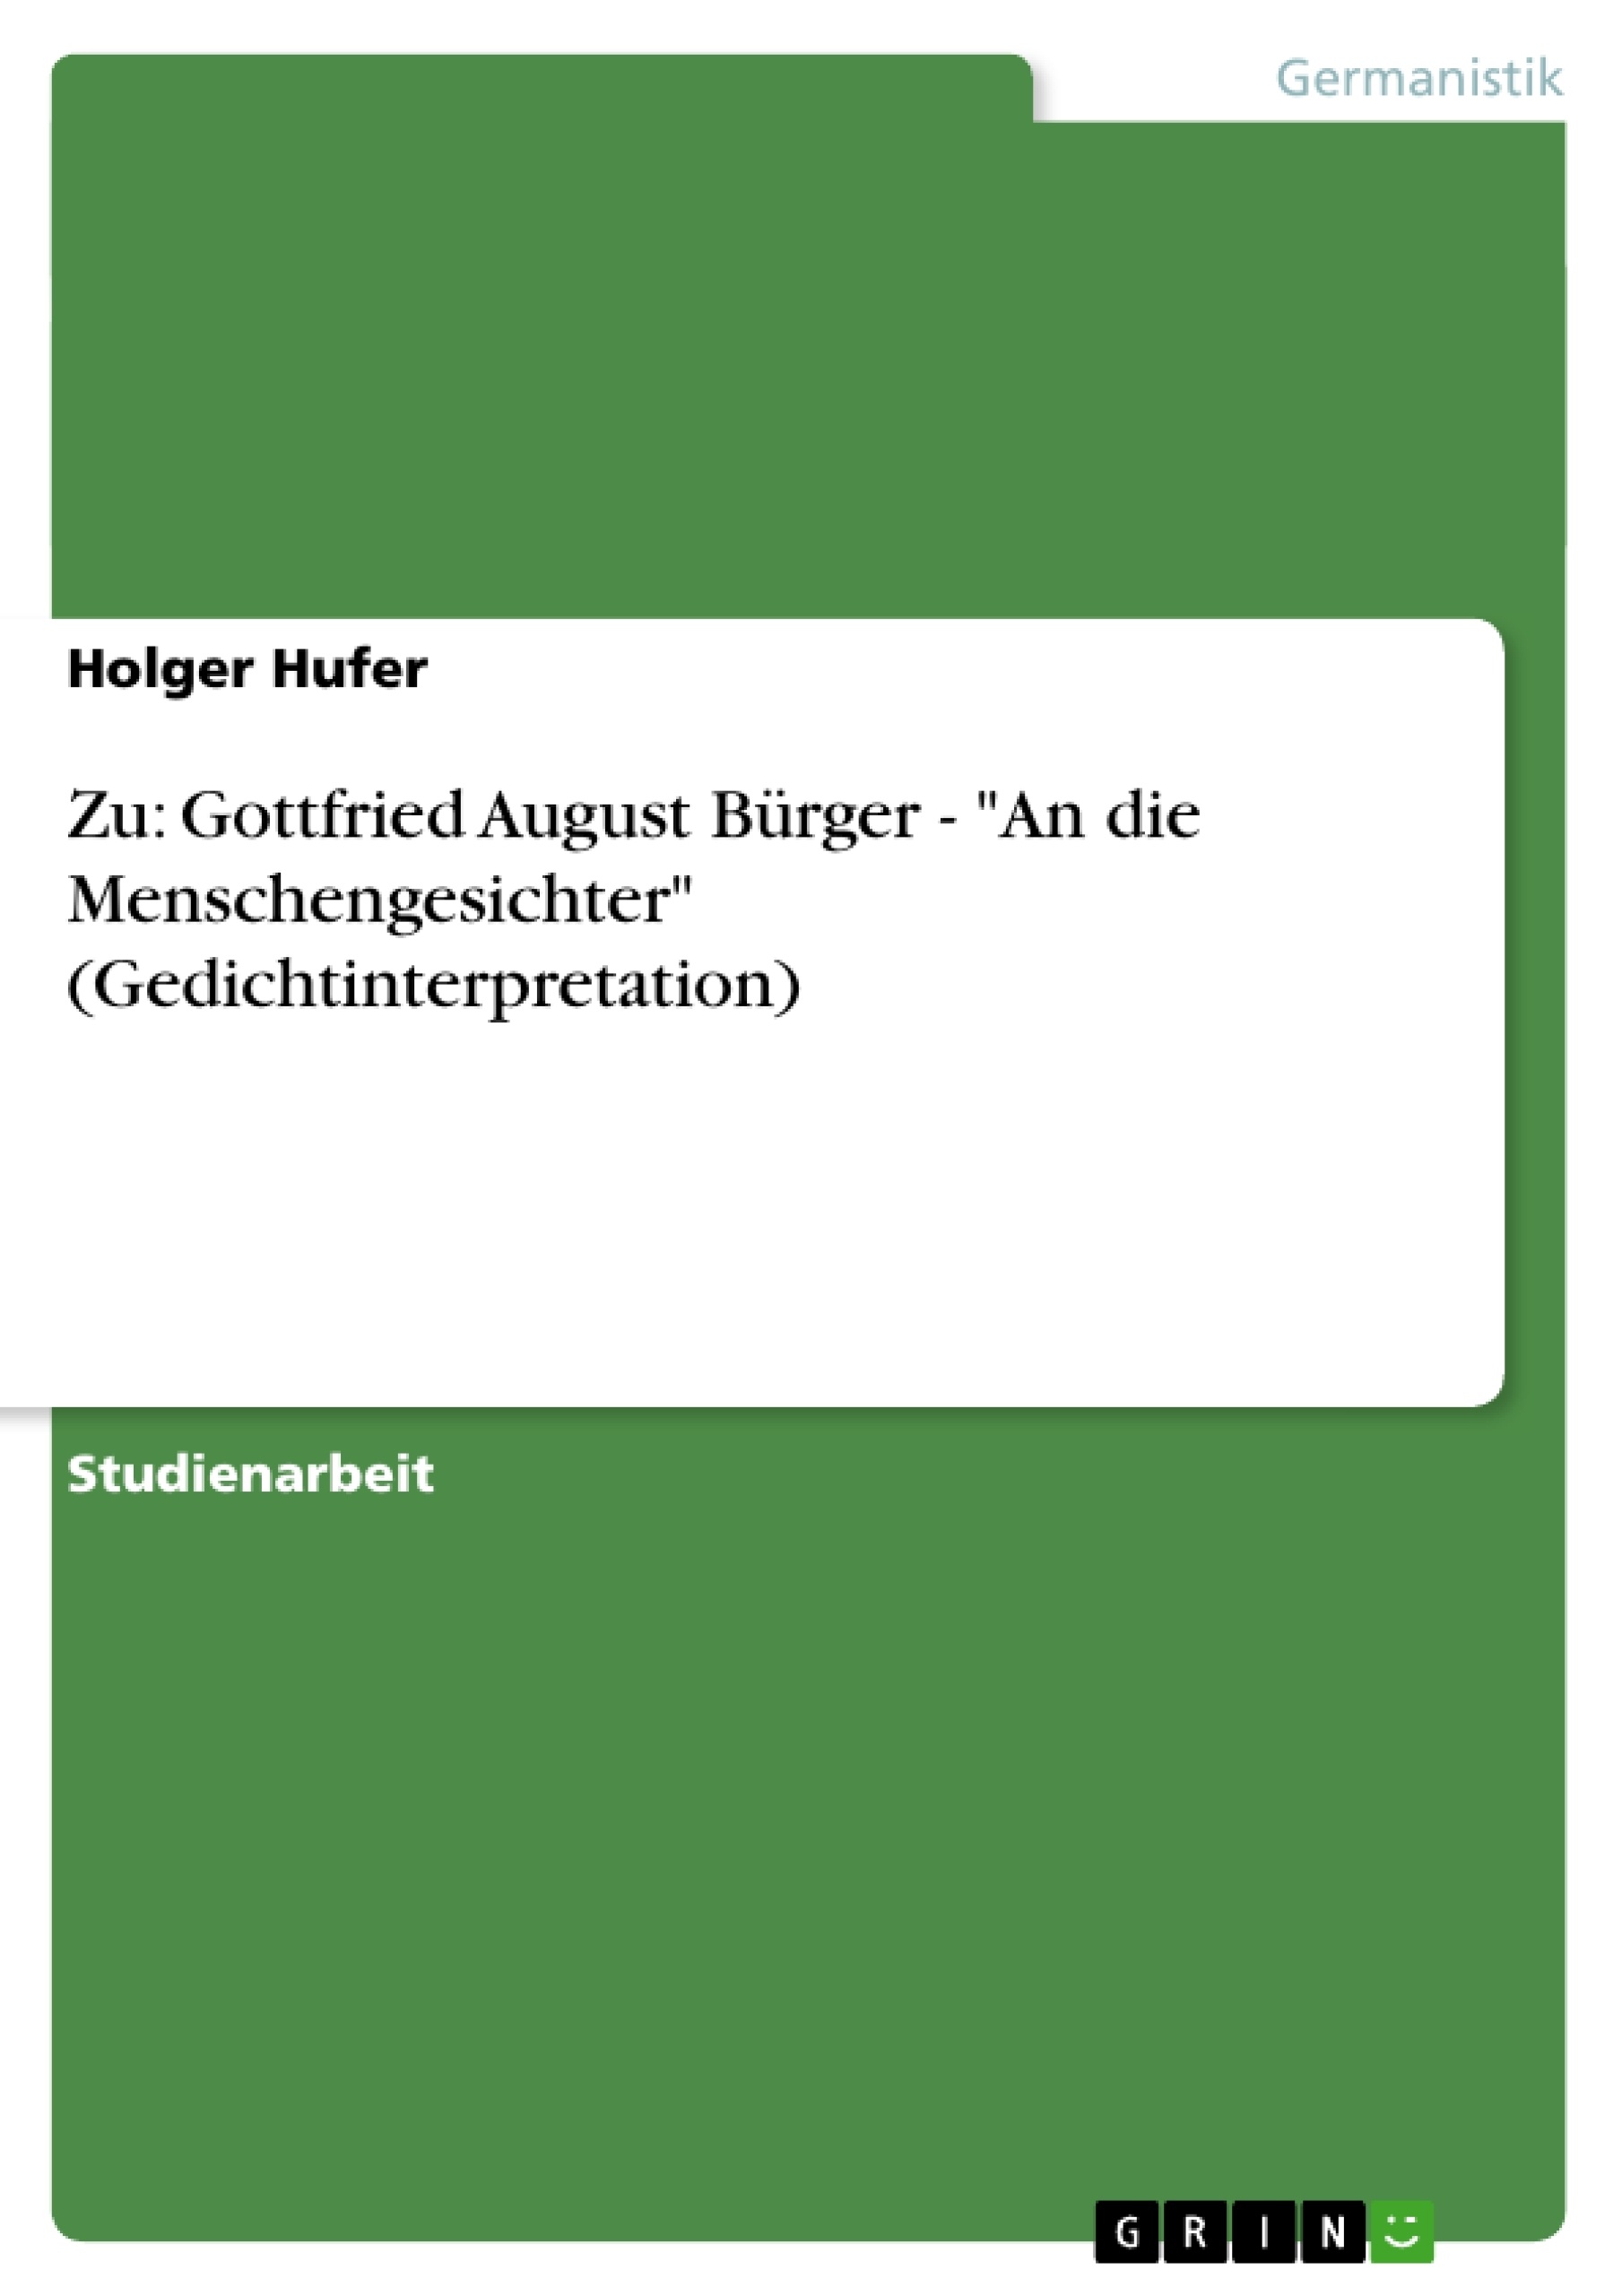 Título: Zu: Gottfried August Bürger - "An die Menschengesichter" (Gedichtinterpretation)